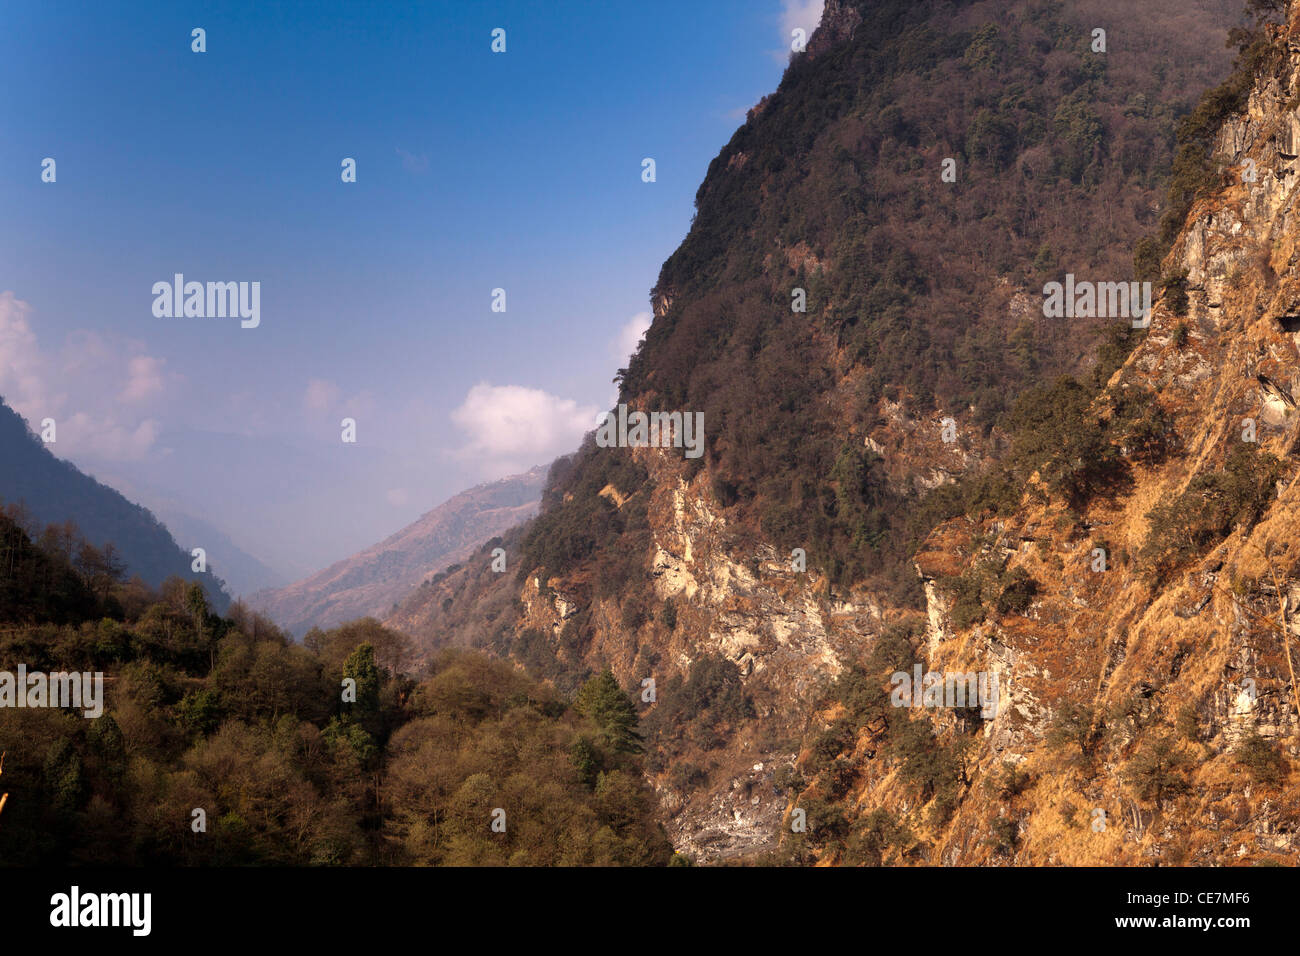 Indien, Arunachal Pradesh, Tawang Valley, Anzeigen von Jang in Richtung tibetische Grenze Stockfoto